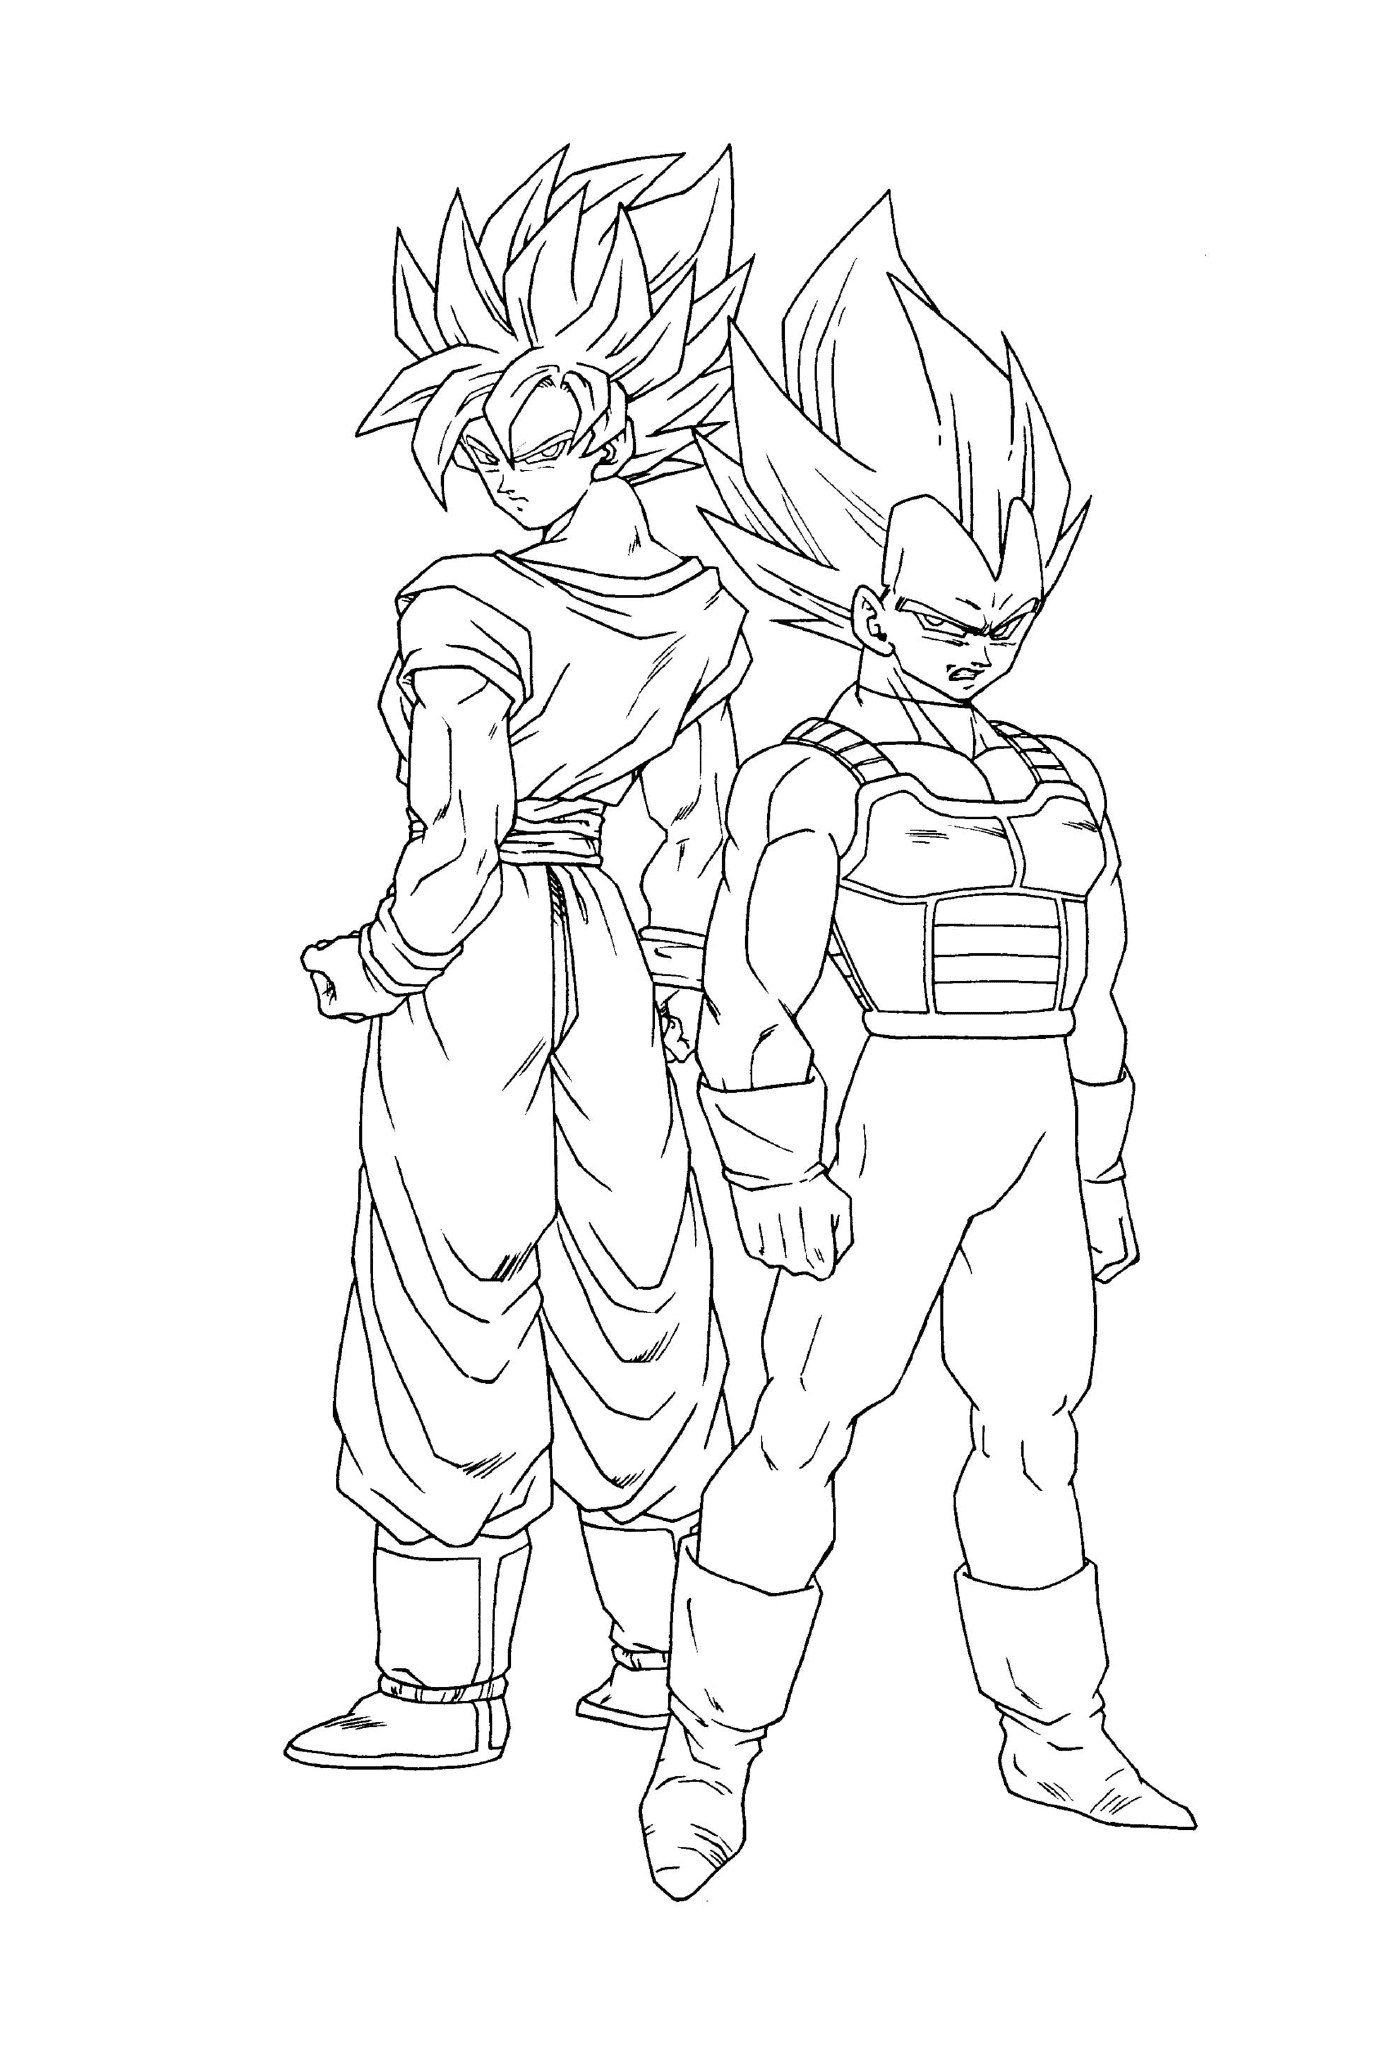  Goku und sein Bruder Vegeta von Dragon Ball Z 